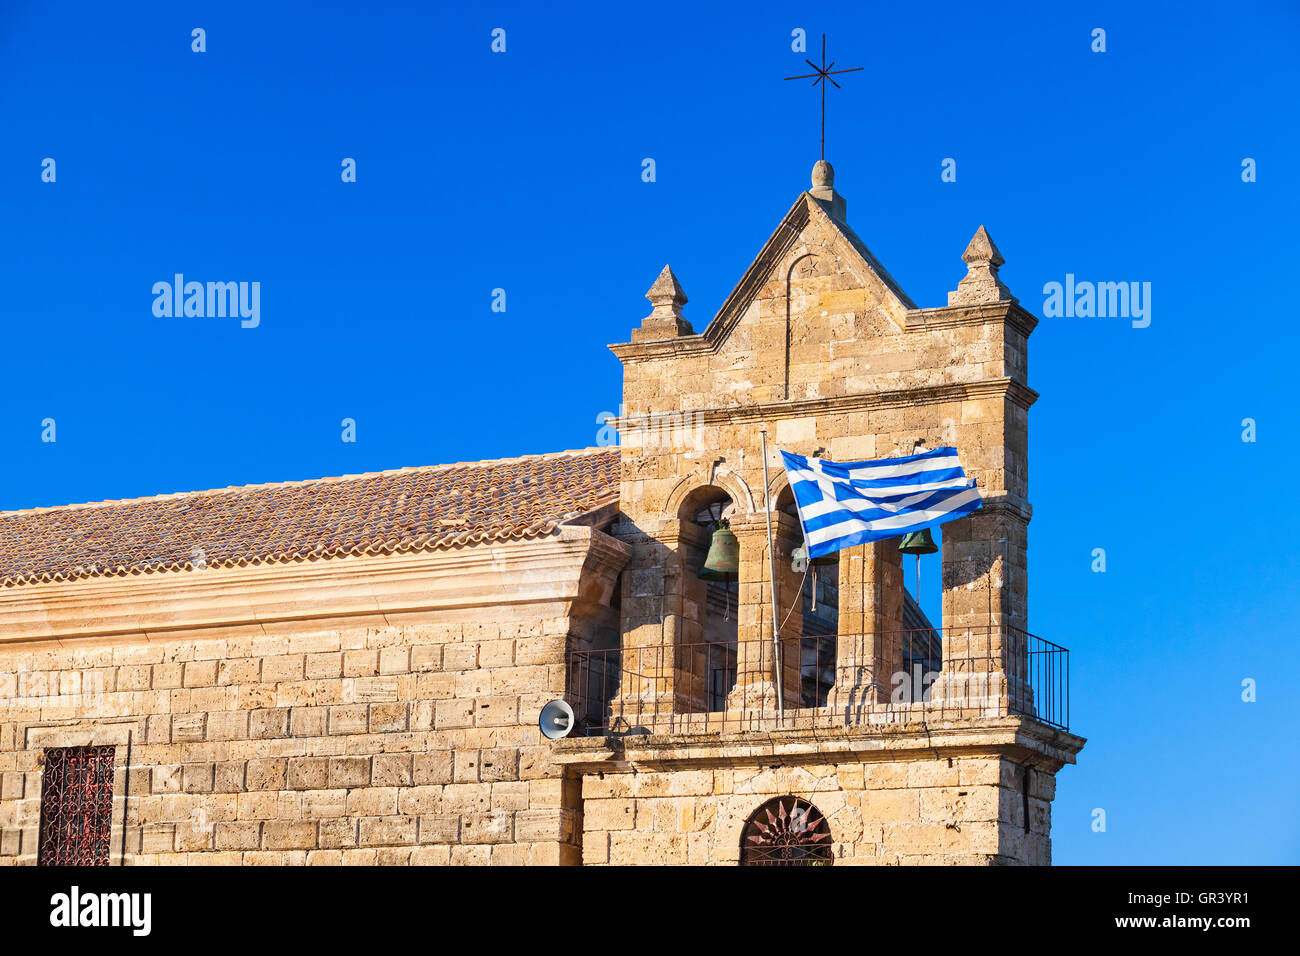 En agitant le drapeau grec sur le clocher de l'église Saint Nicholas Molou sur place Solomos. Zakynthos, île grecque dans la mer Ionienne Banque D'Images